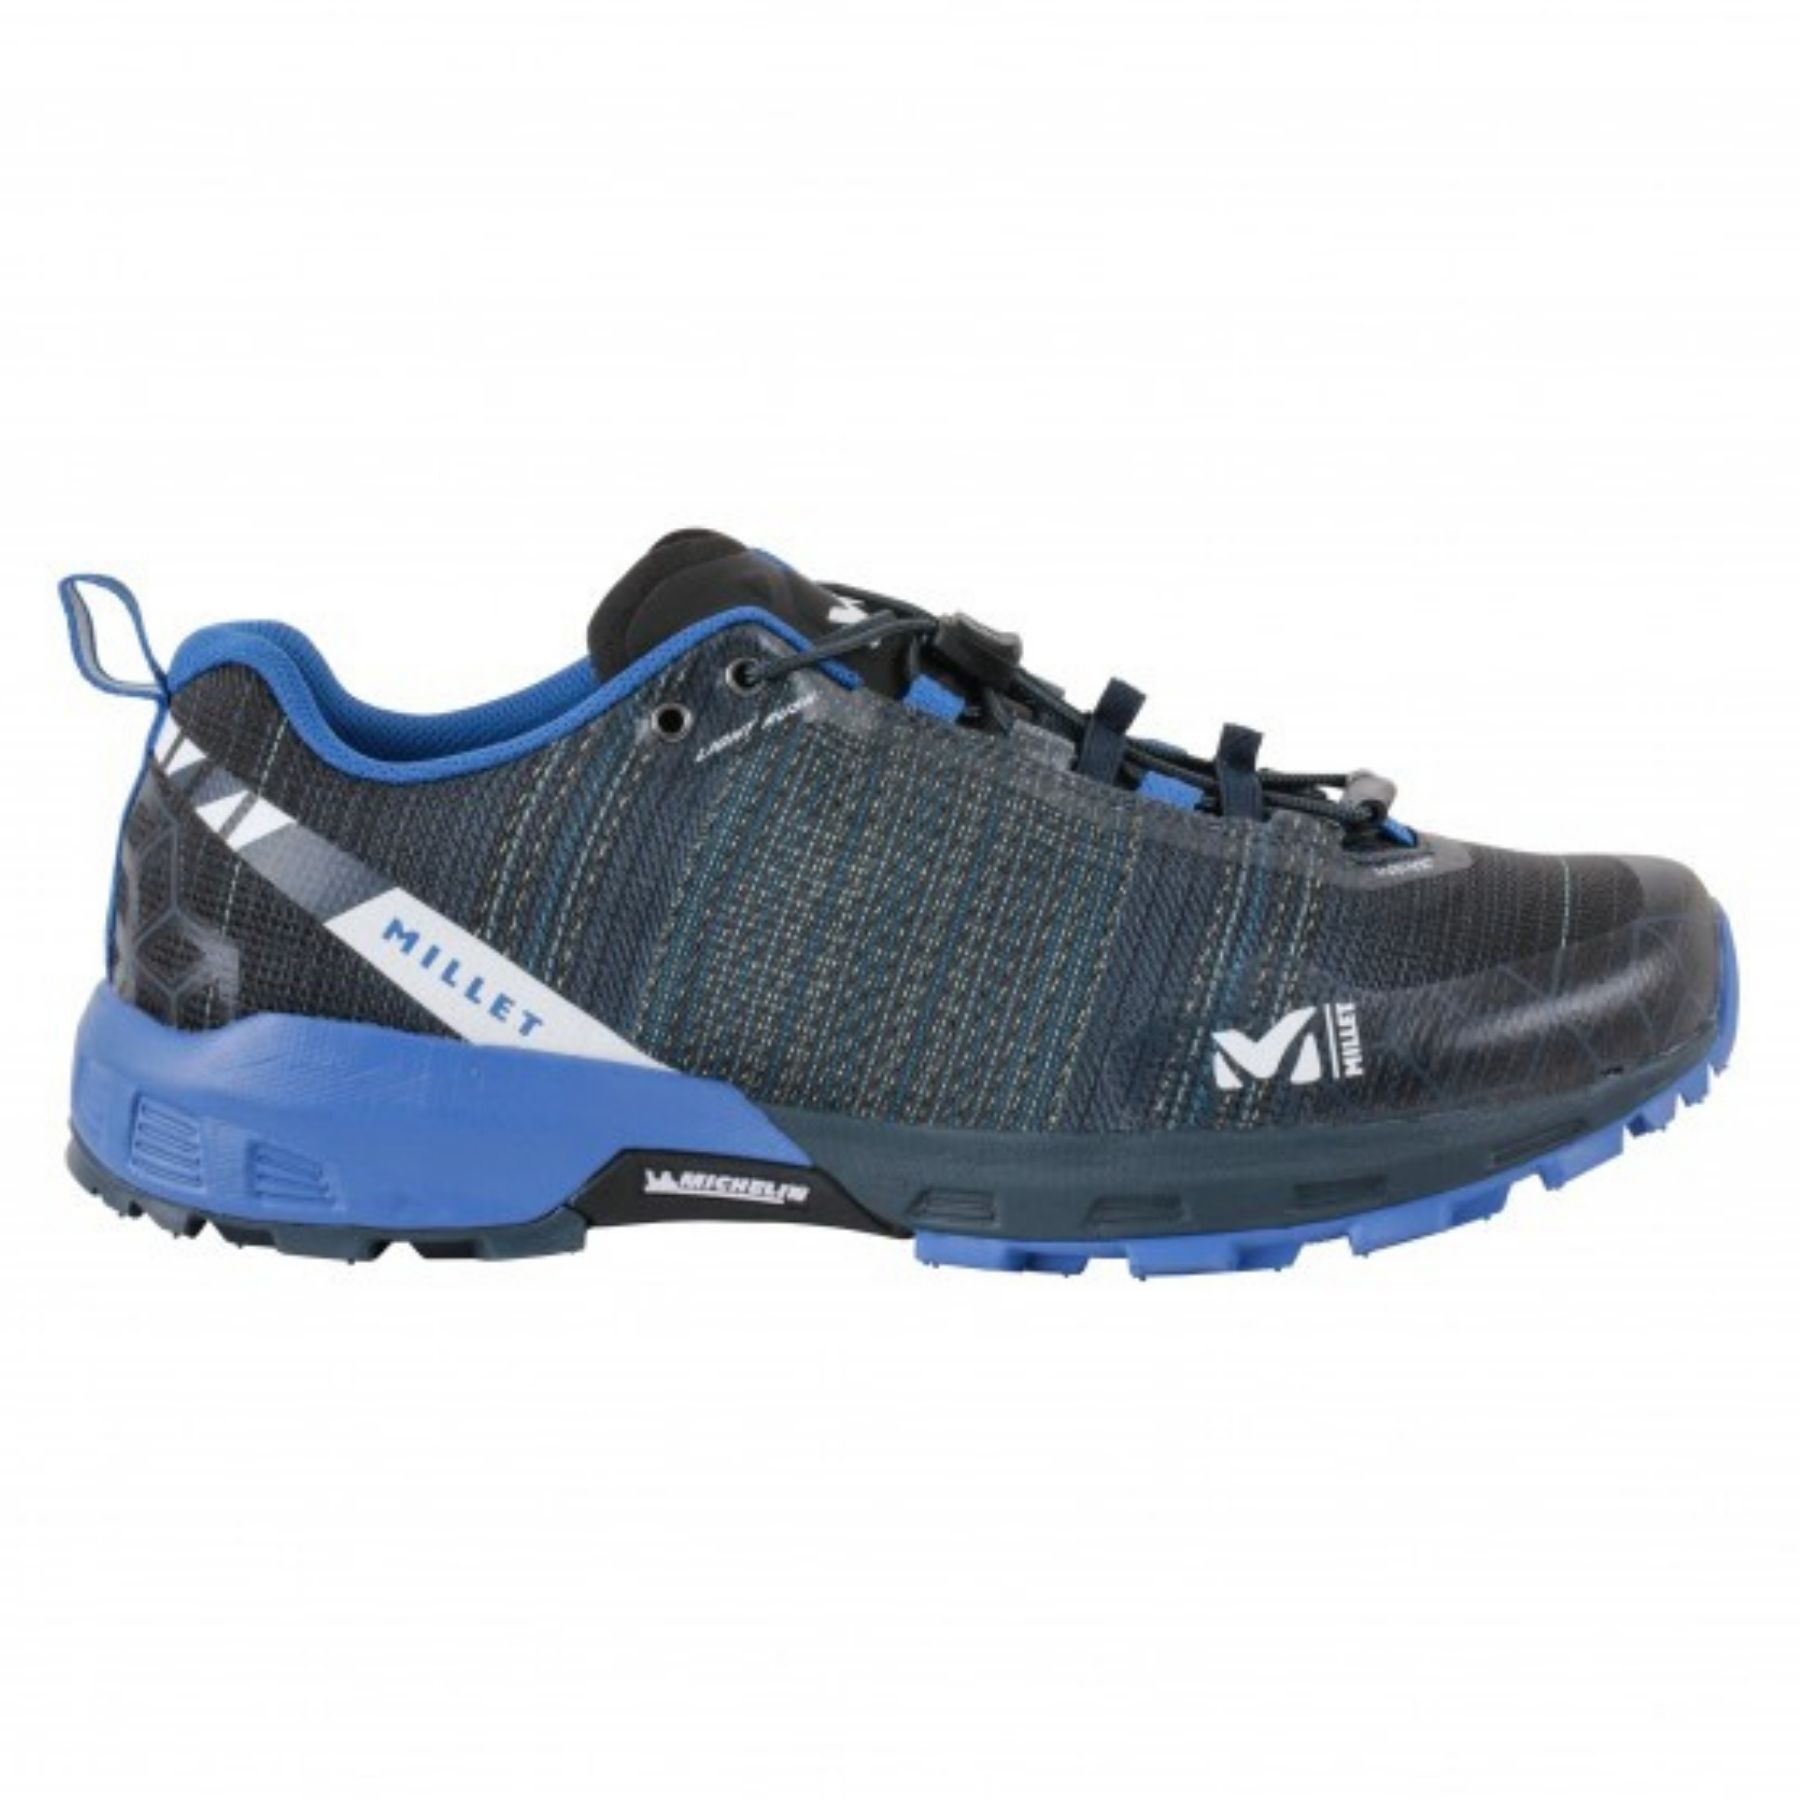 Millet Light Rush - Trail running shoes - Men's